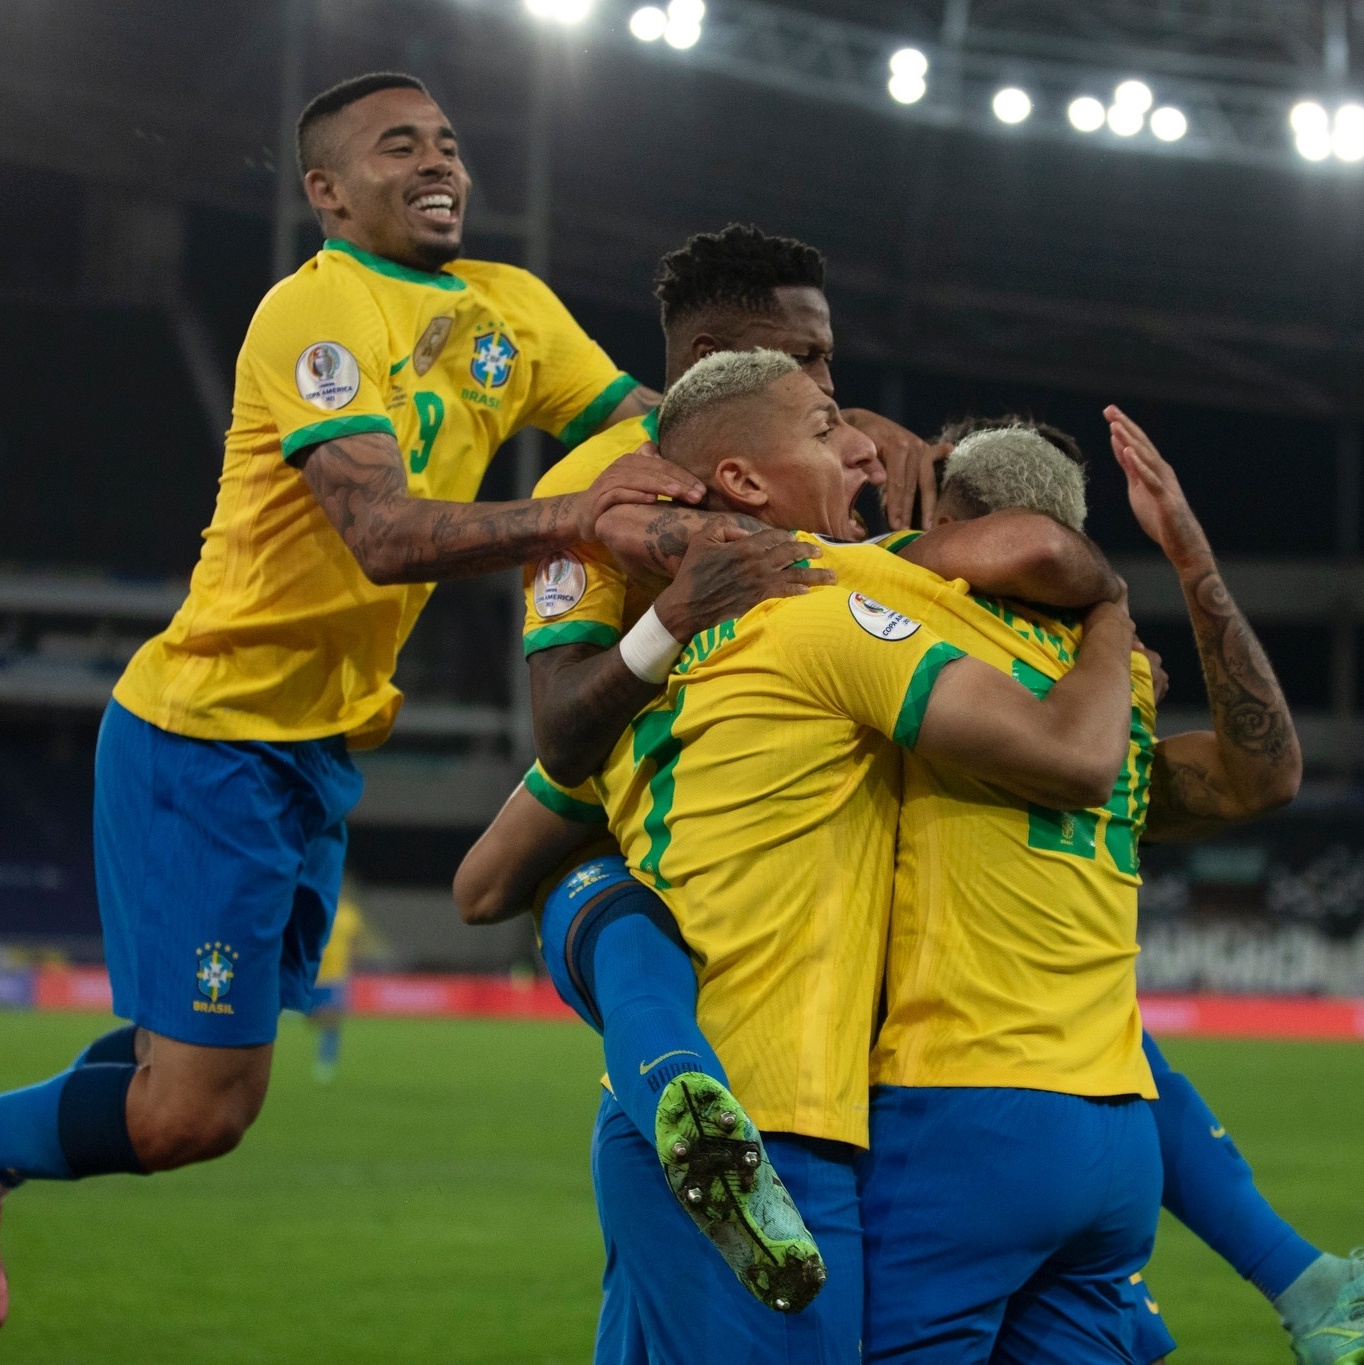 Tá em crise? Chama o Chile: Brasil enfrenta freguês para esquecer o vice -  02/09/2021 - UOL Esporte